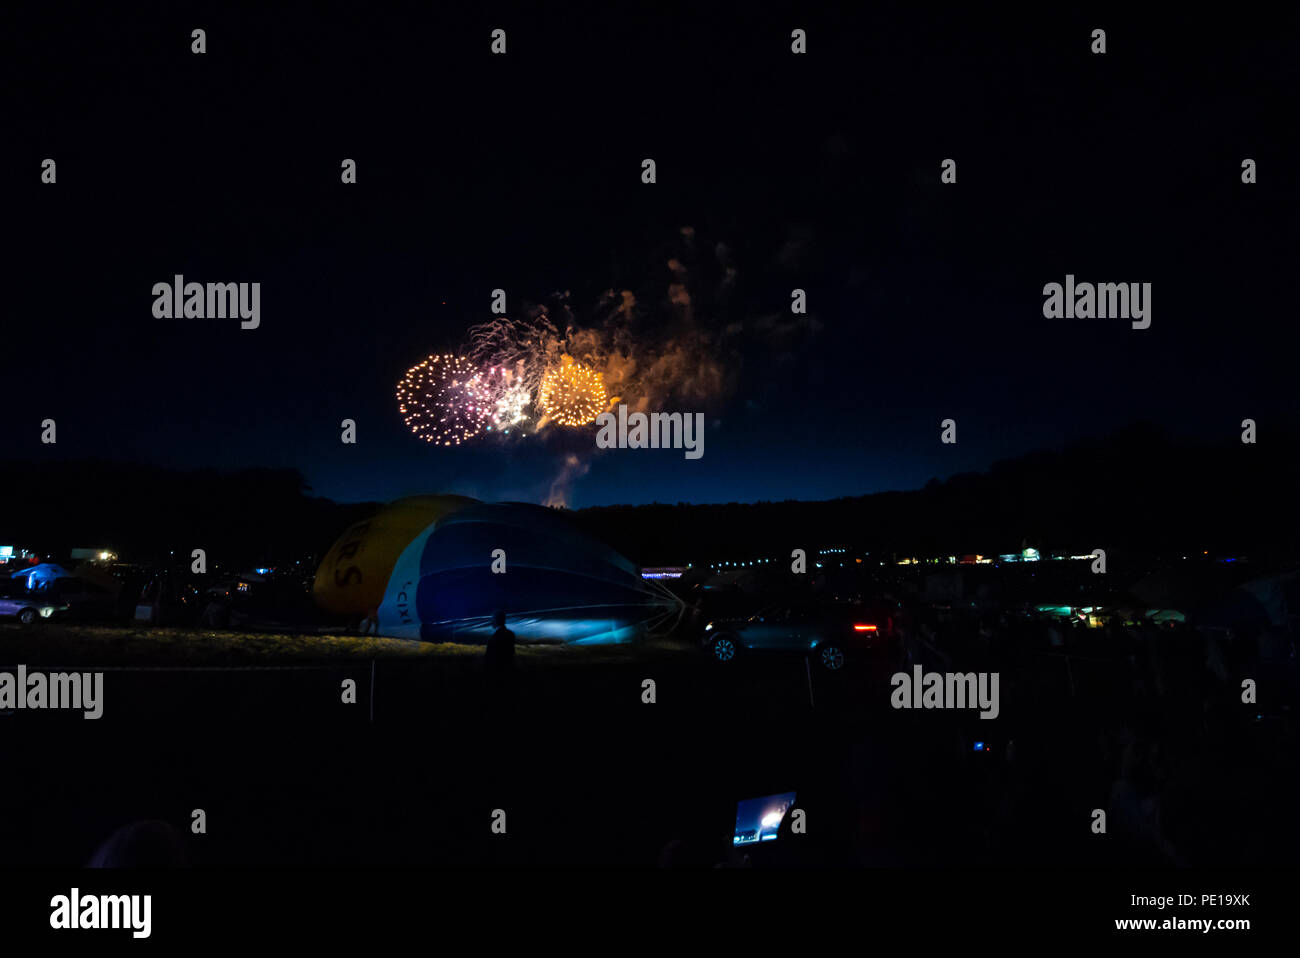 Feuerwerk nach der Nacht leuchtet beim Heißluftballon-Event Bristol International Balloon Fiesta. Ballons mit Luft. Nachts. Dunkel Stockfoto